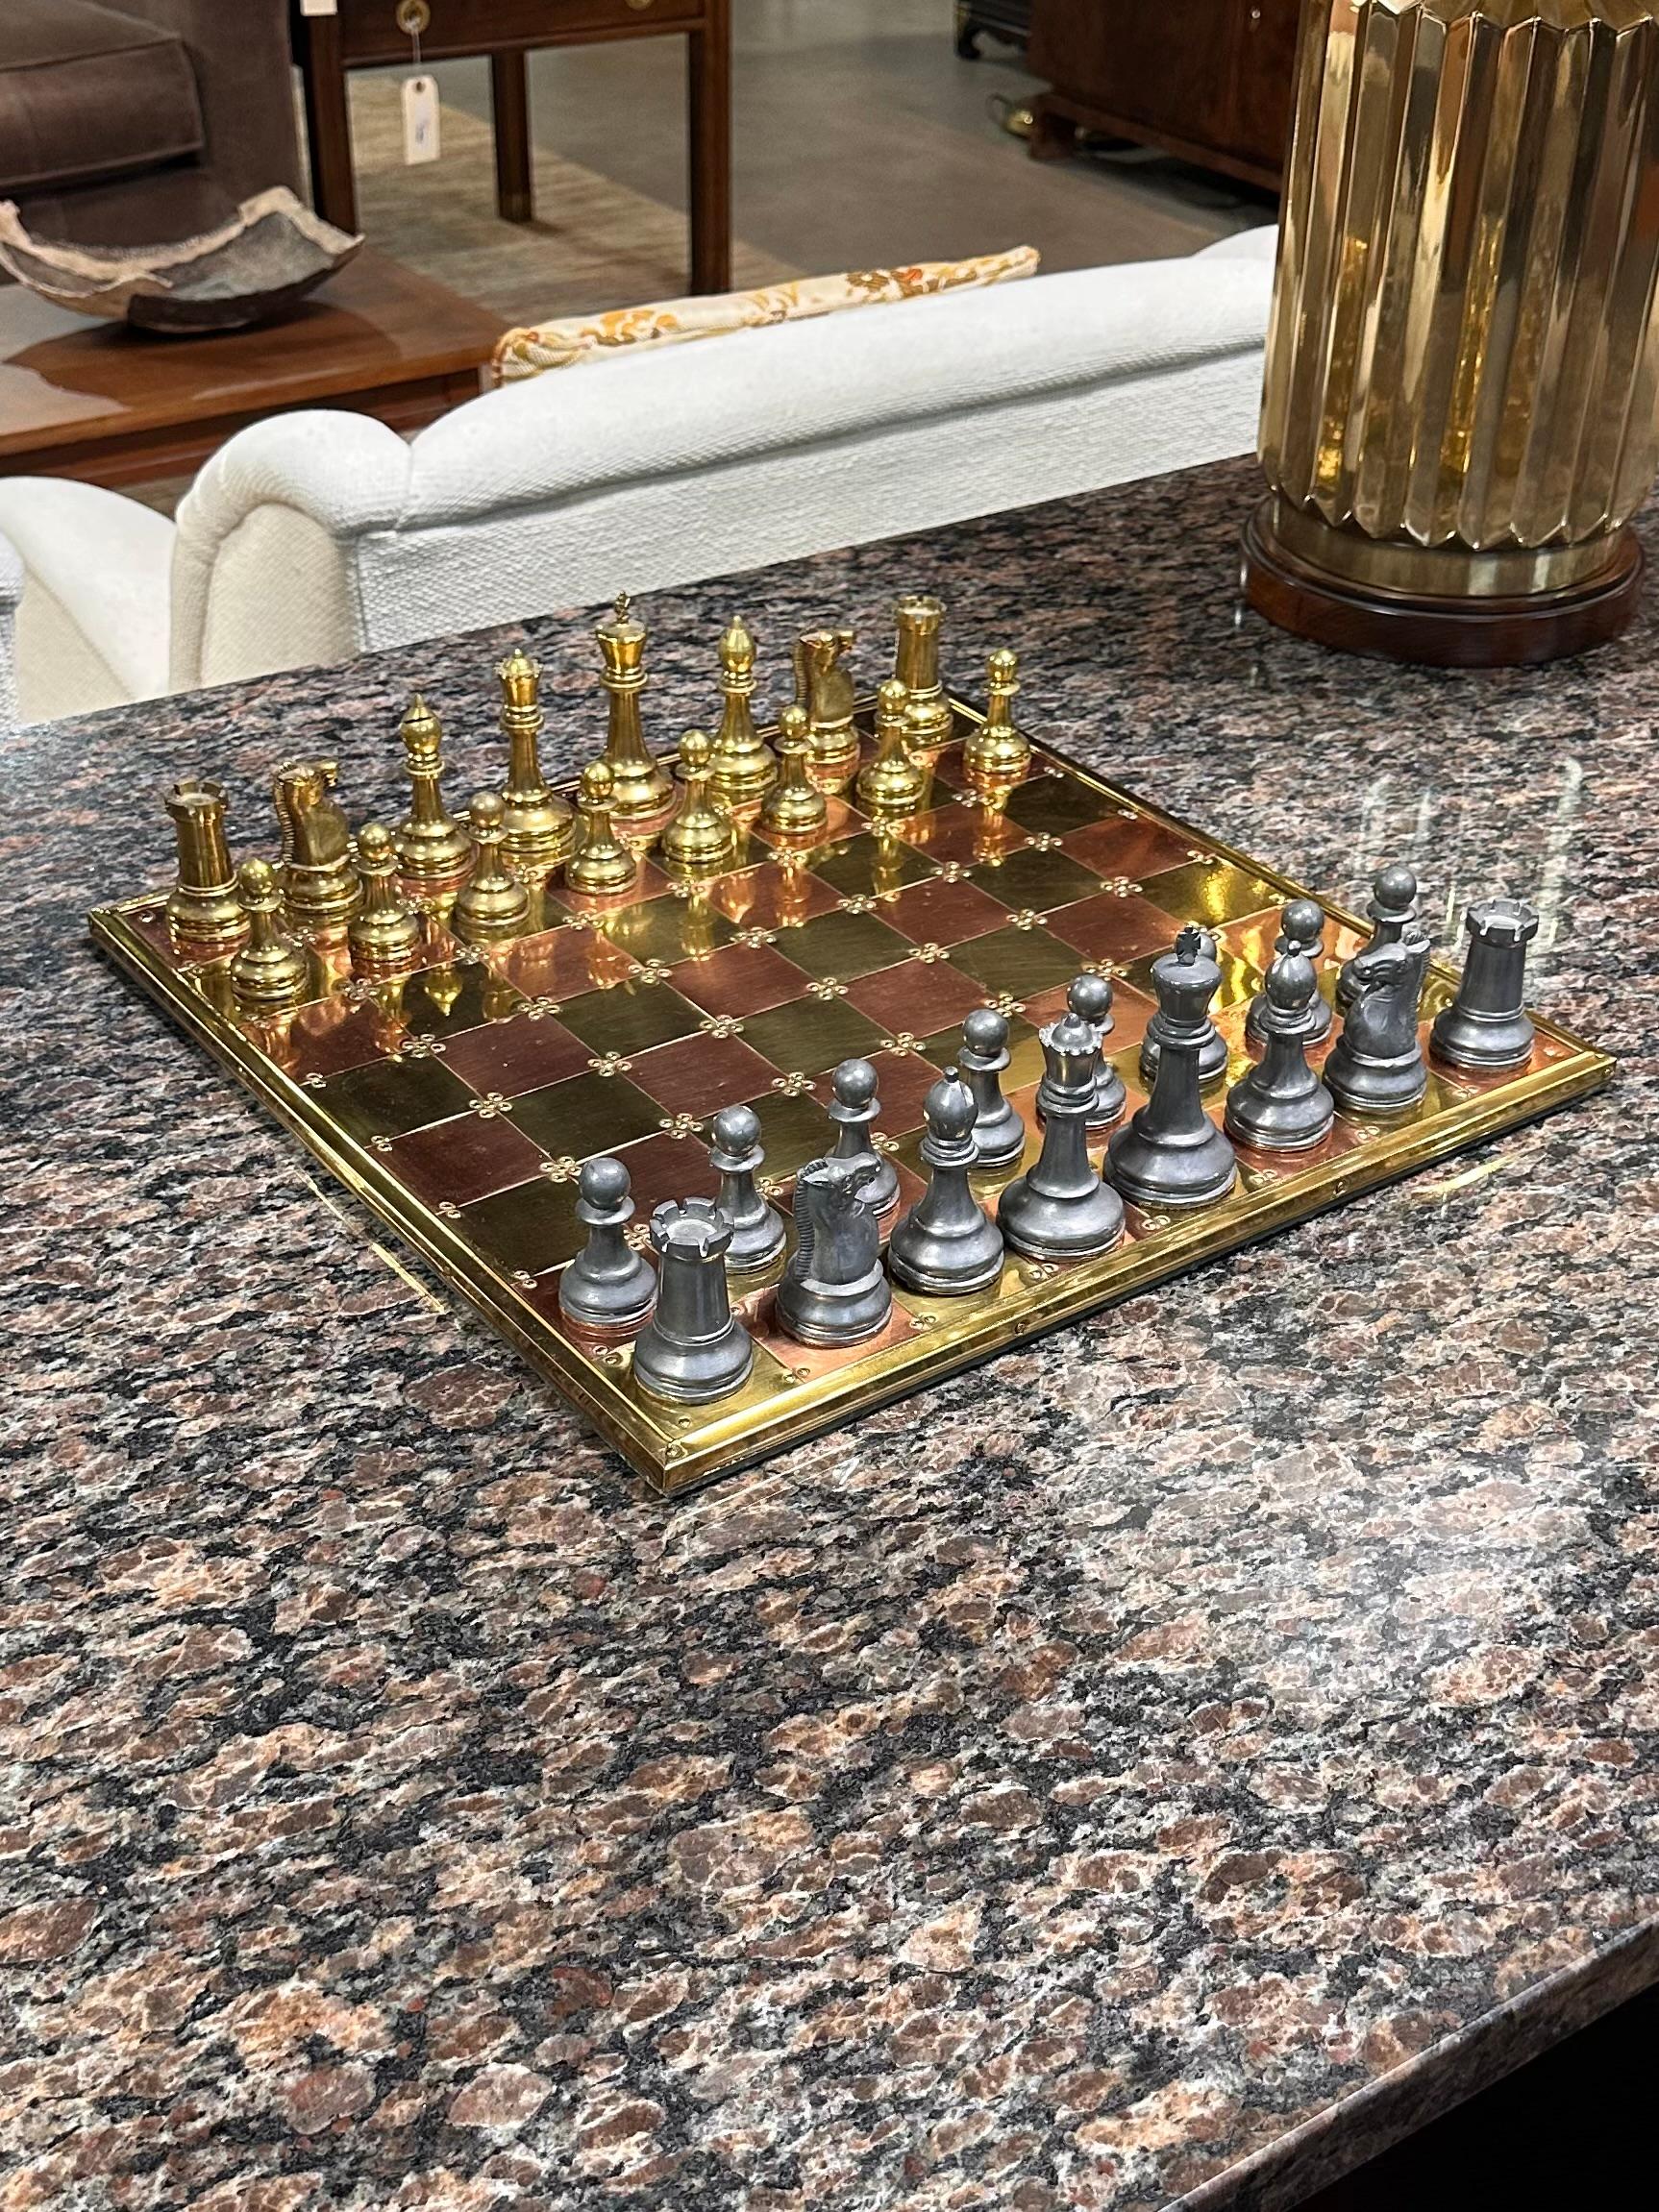 Juego de ajedrez inglés vintage de latón, cobre y peltre

Se trata de un juego inglés muy fino de latón, cobre y peltre, de finales del siglo XX, hacia 1980. El tablero de ajedrez está construido con 64 cuadrados de cobre y latón, cada uno con un